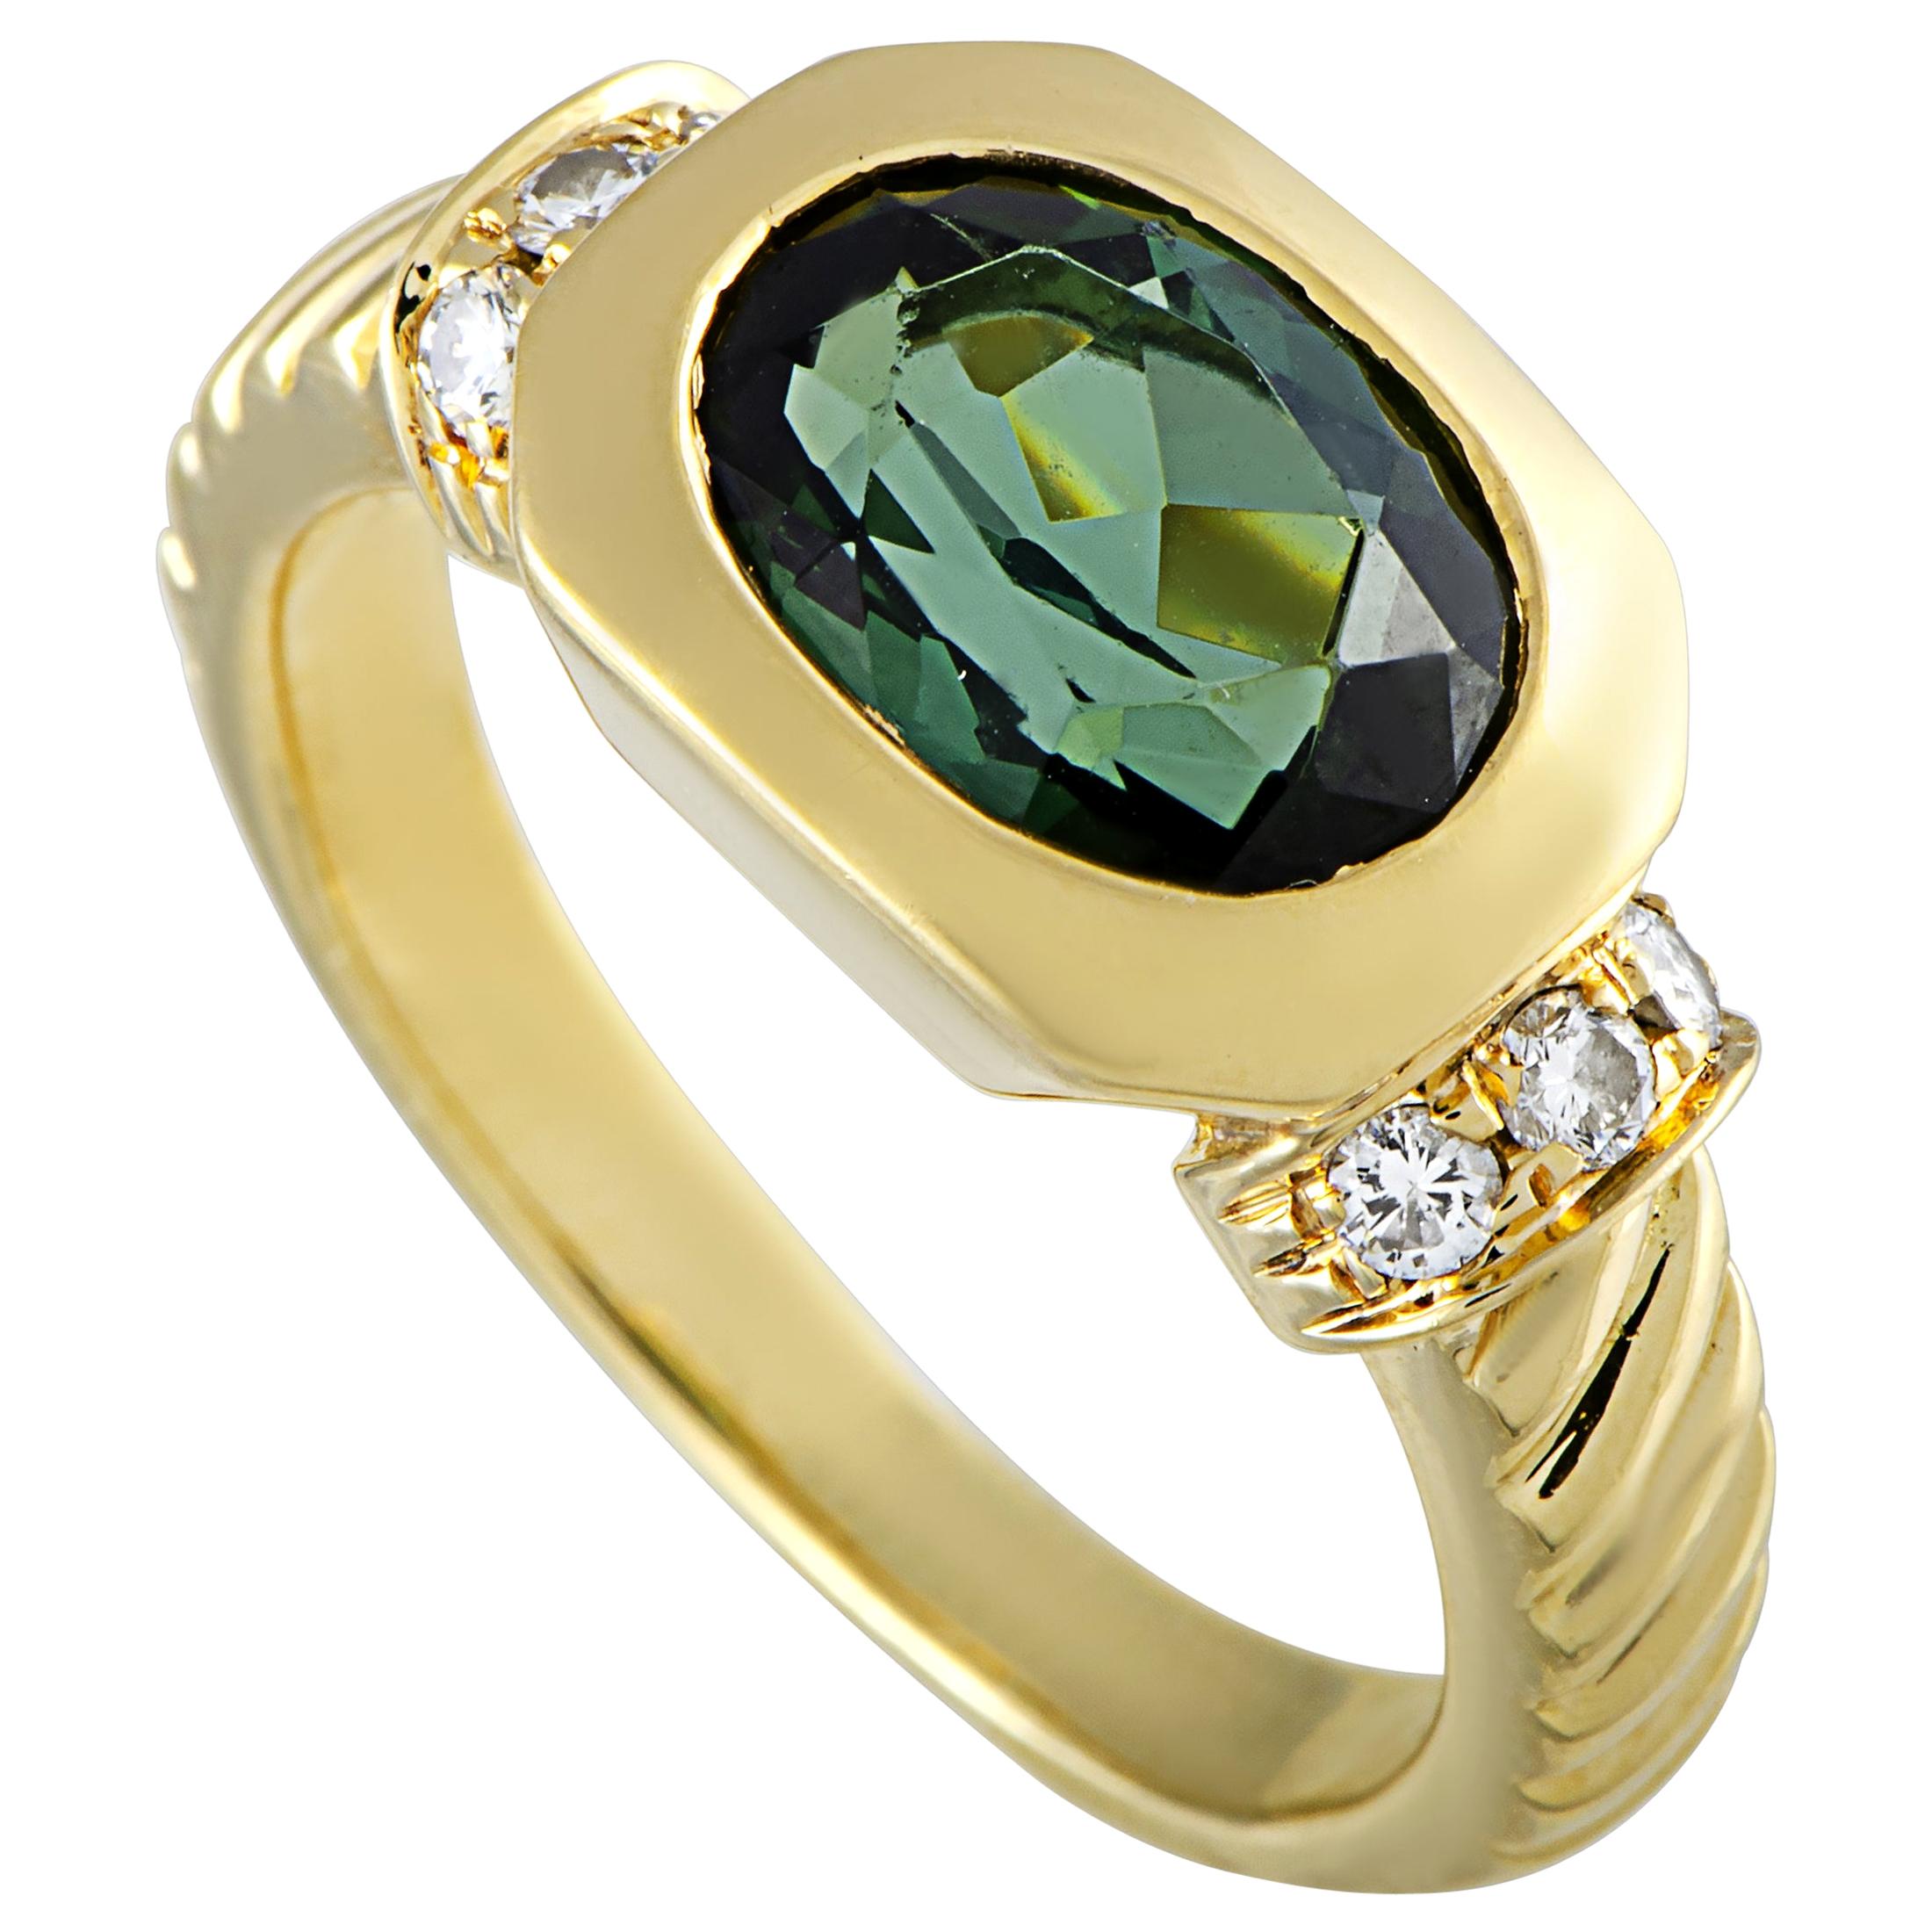 Bvlgari 18 Karat Yellow Gold Diamond and Tourmaline Ring